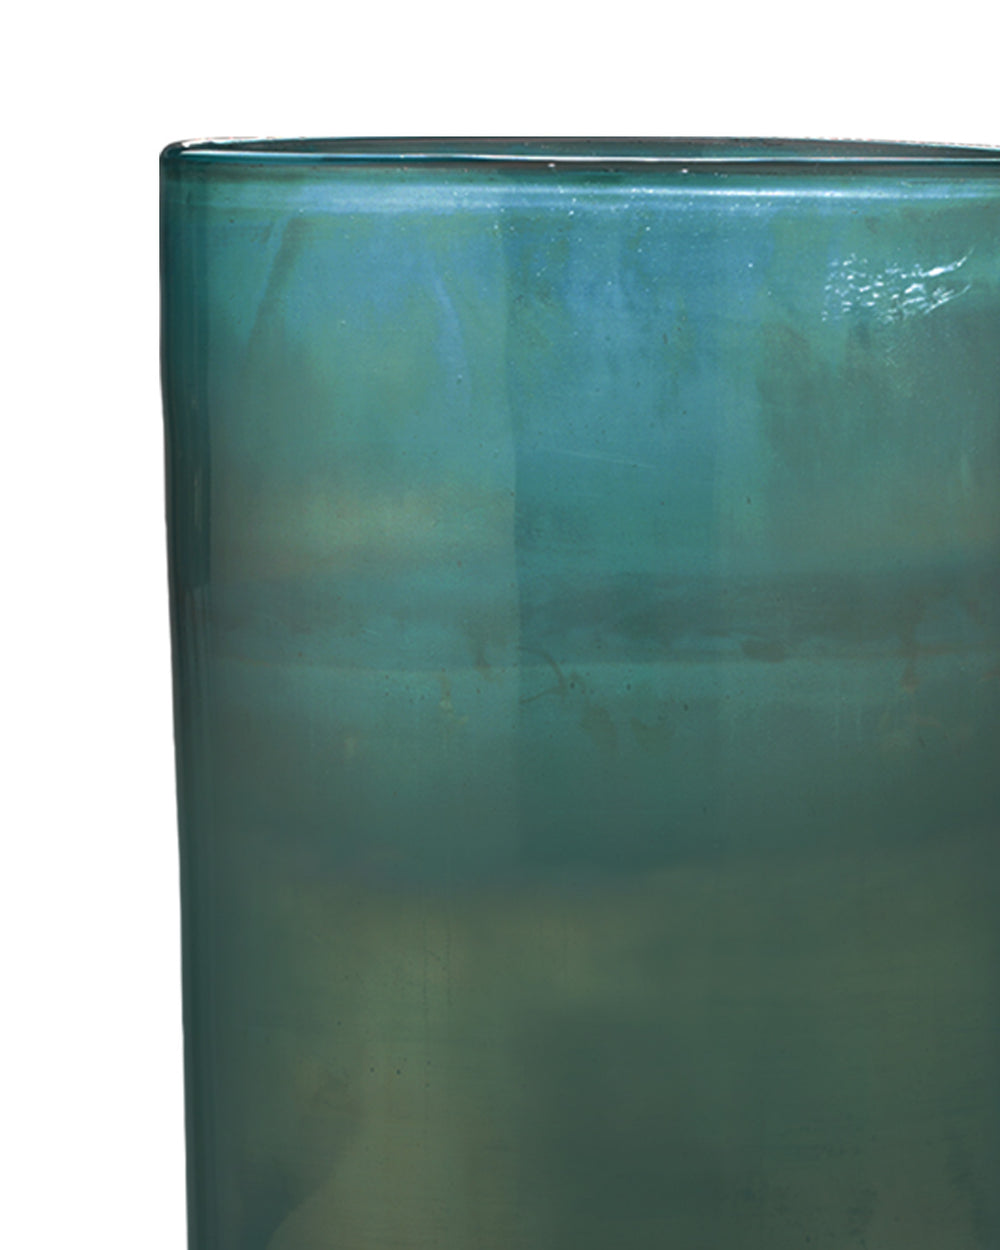 Large Vapor Vase in Metallic Aqua